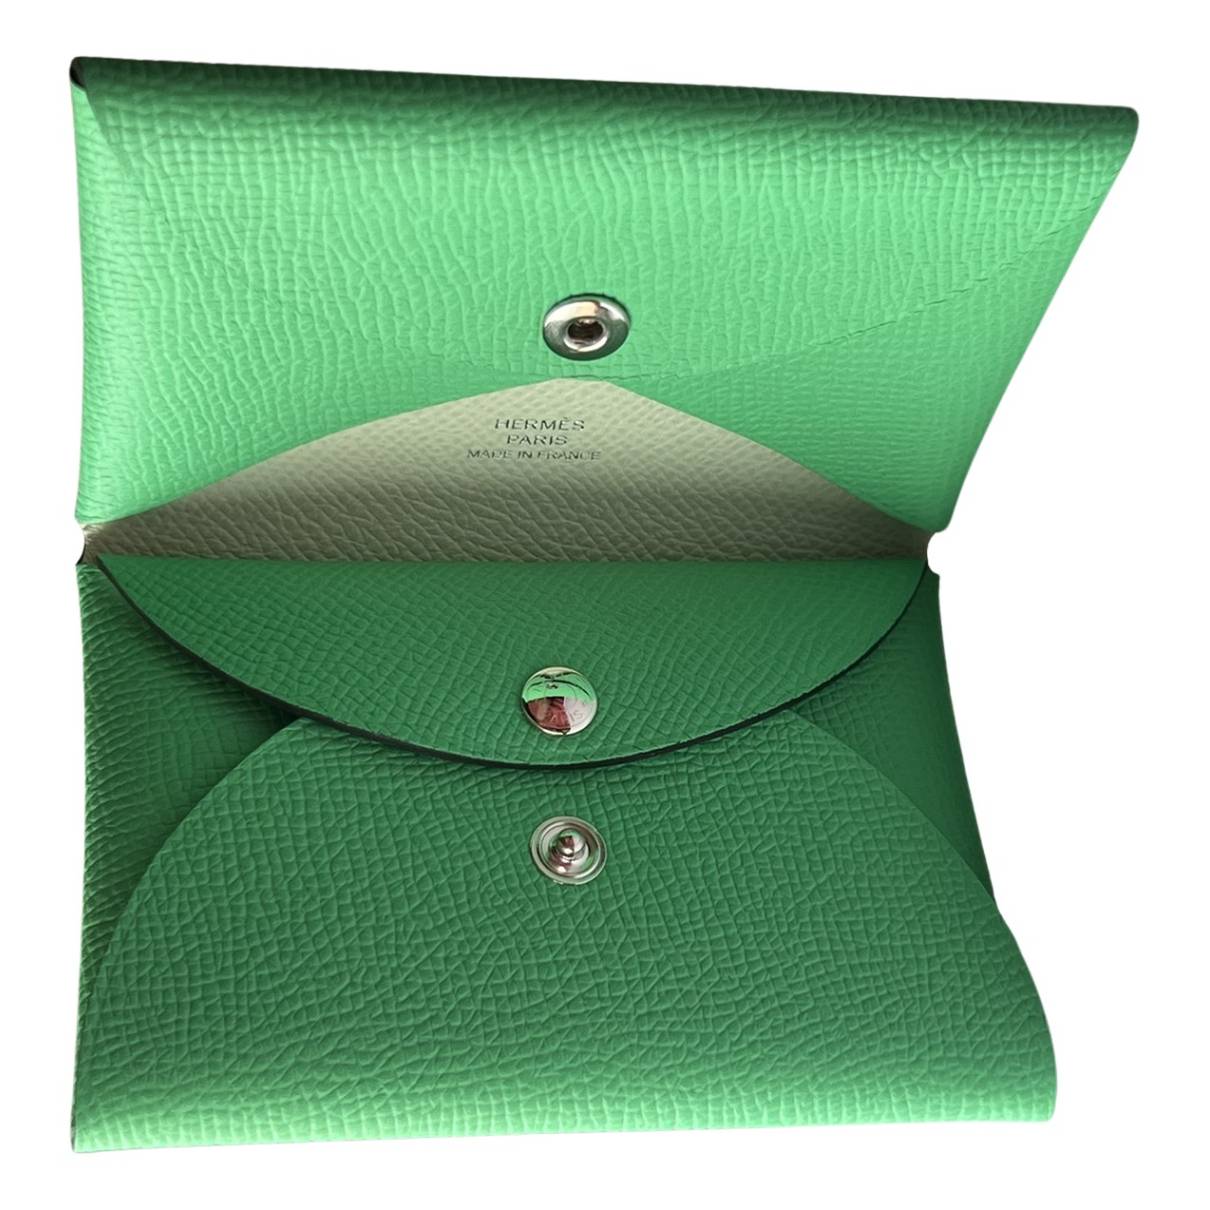 Calvi Style Women's Wallet Cool Luxury Italian Leather 